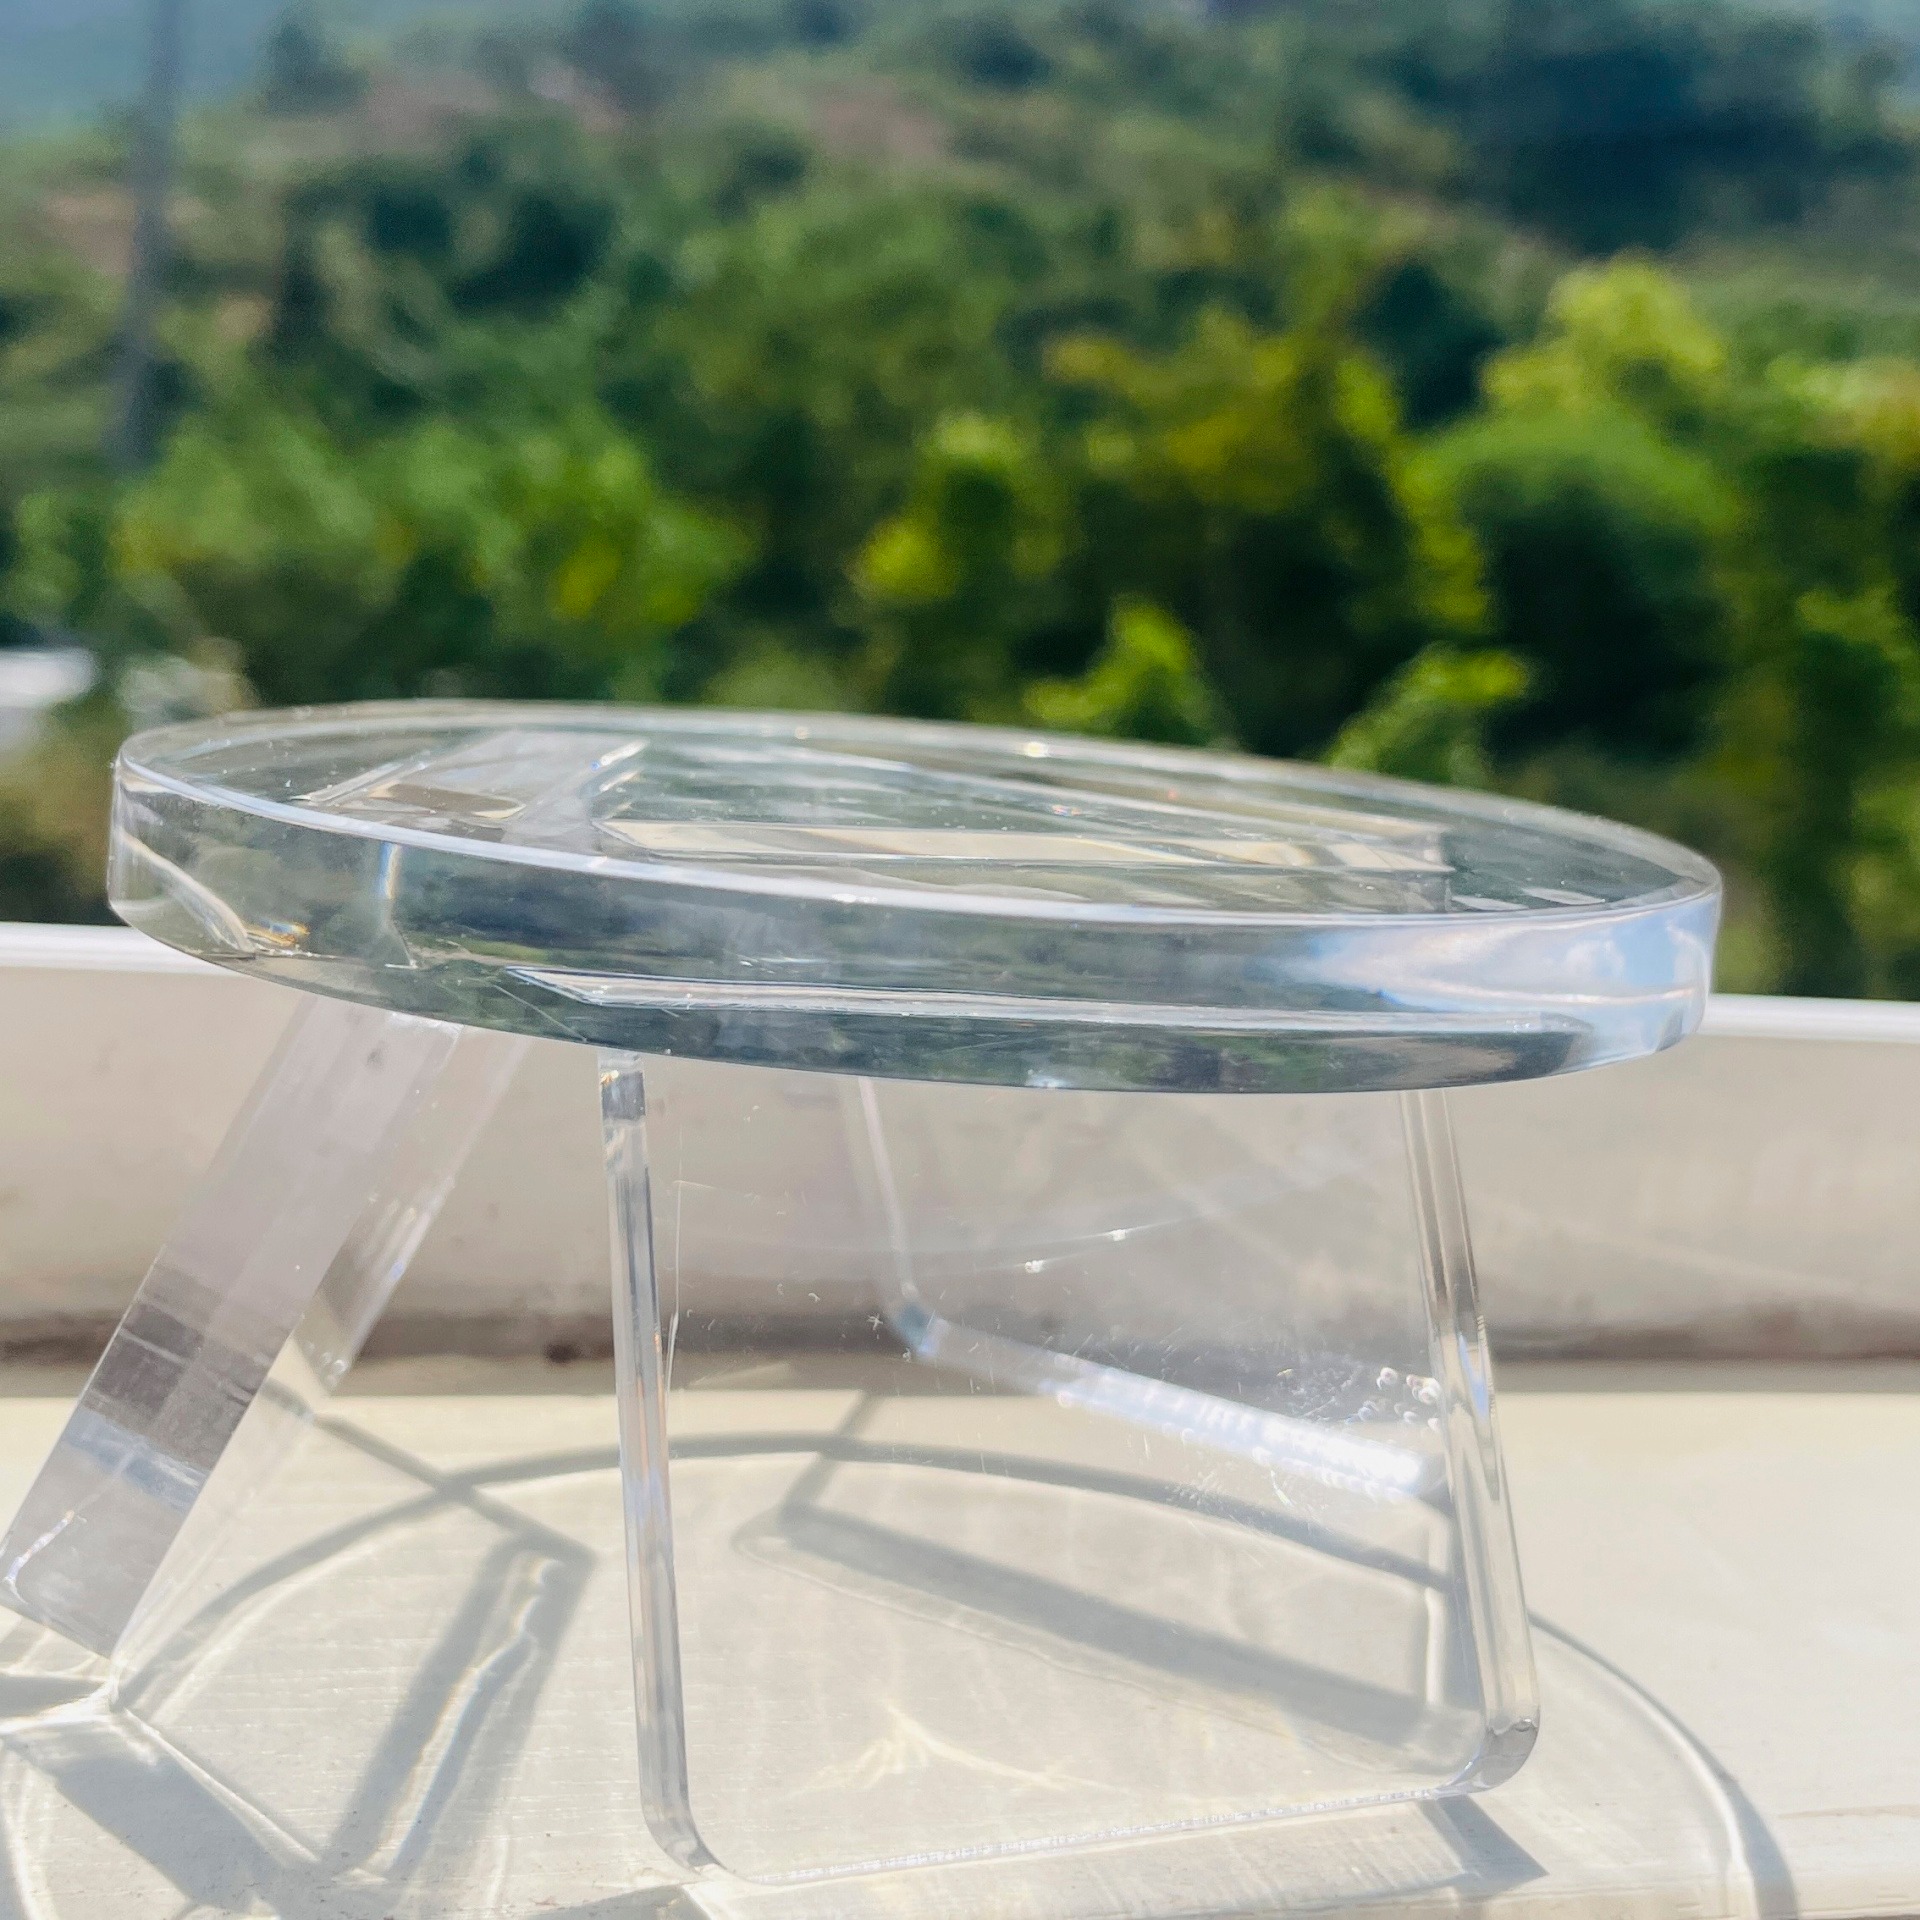 透明有机玻璃工艺品厂家 亚克力水晶奖牌 亚克力工艺品定制